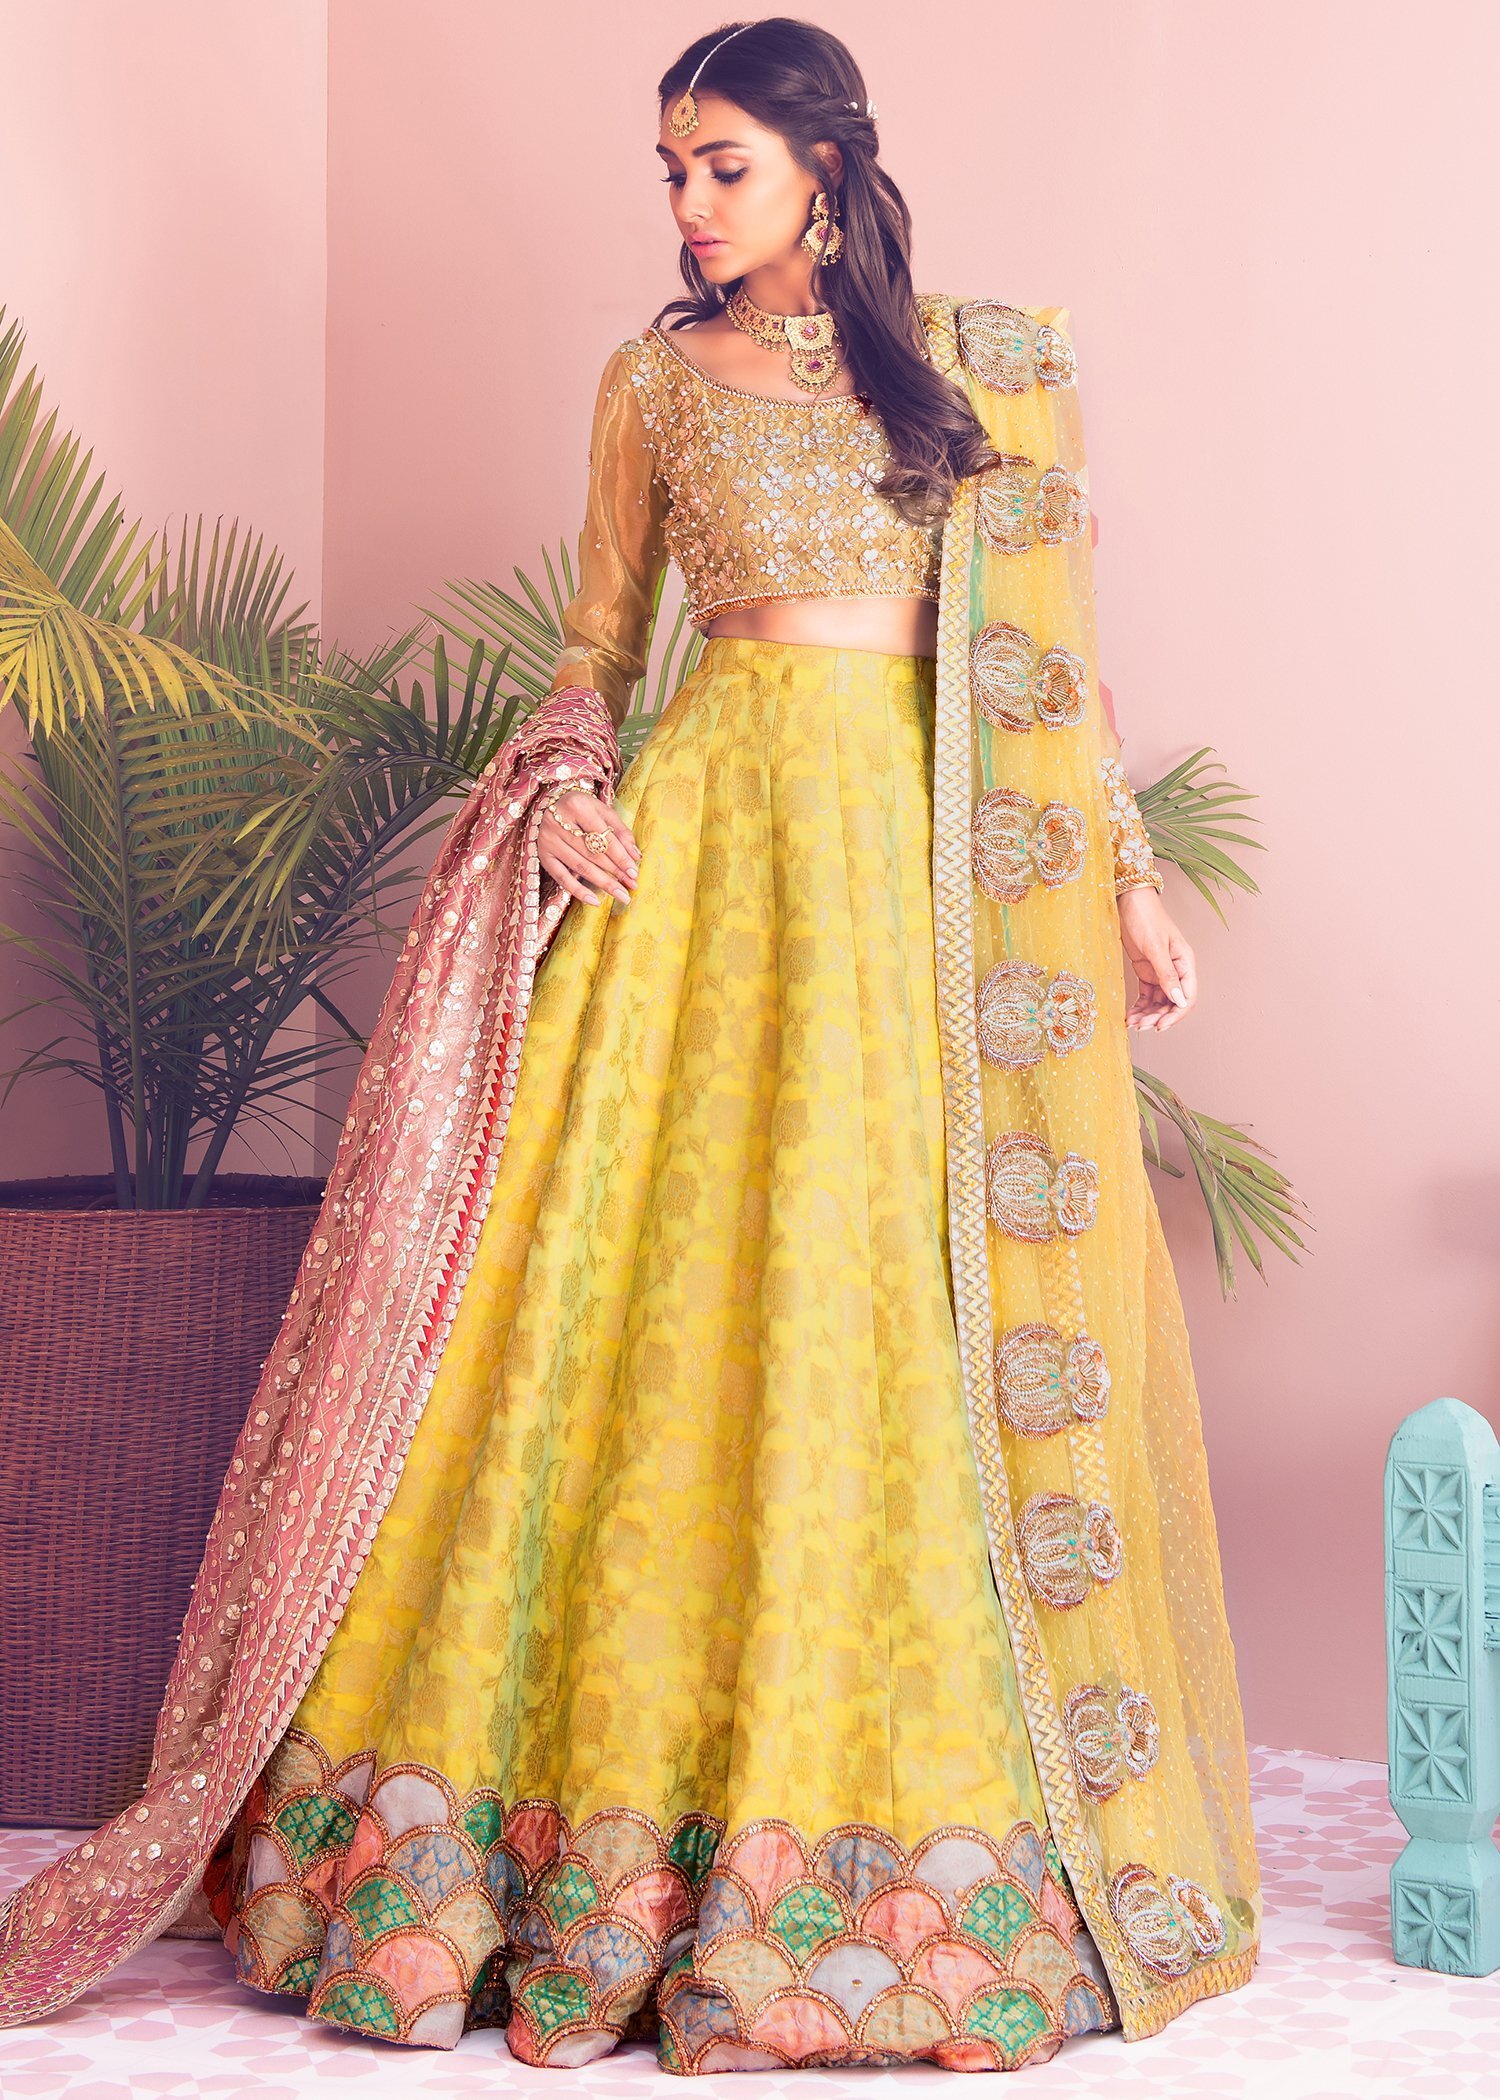 New Bridal Gharara Designs 2023 in Pakistan - Wedding Gharara Dresses